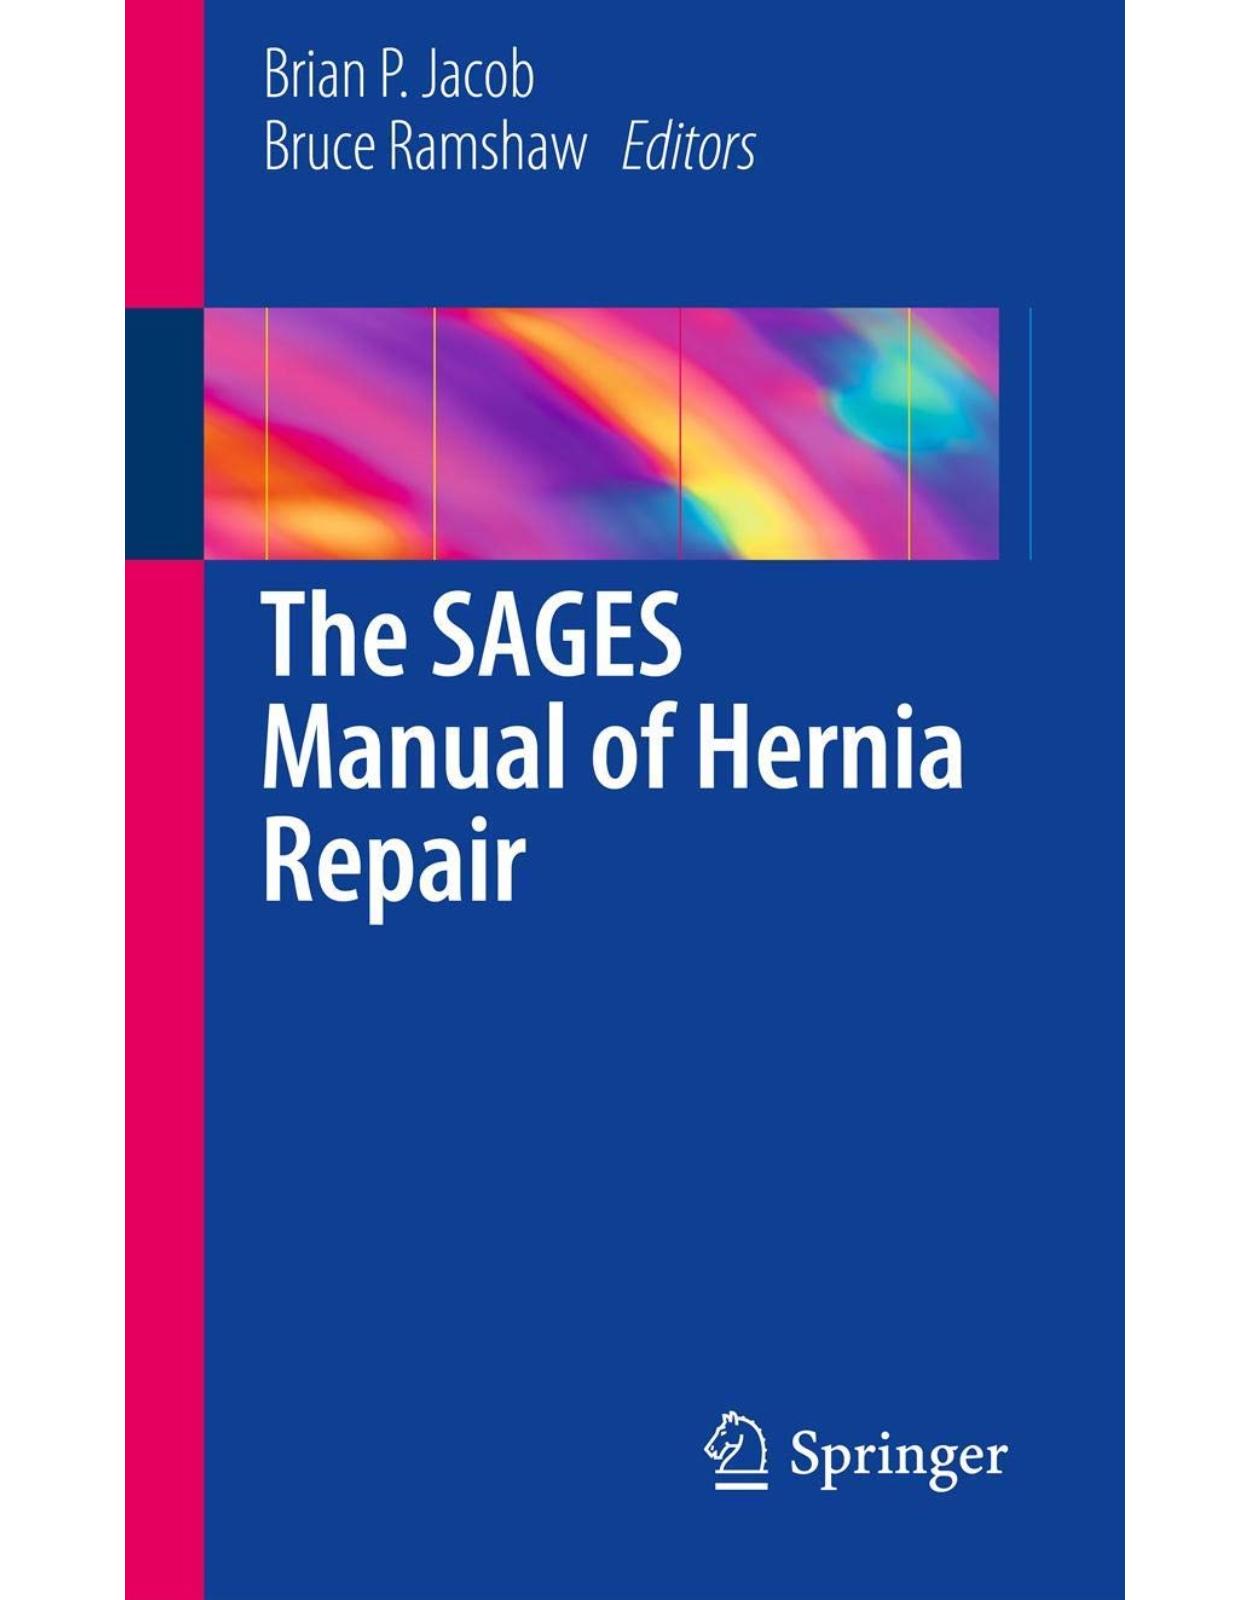 The Sages Manual of Hernia Repair 